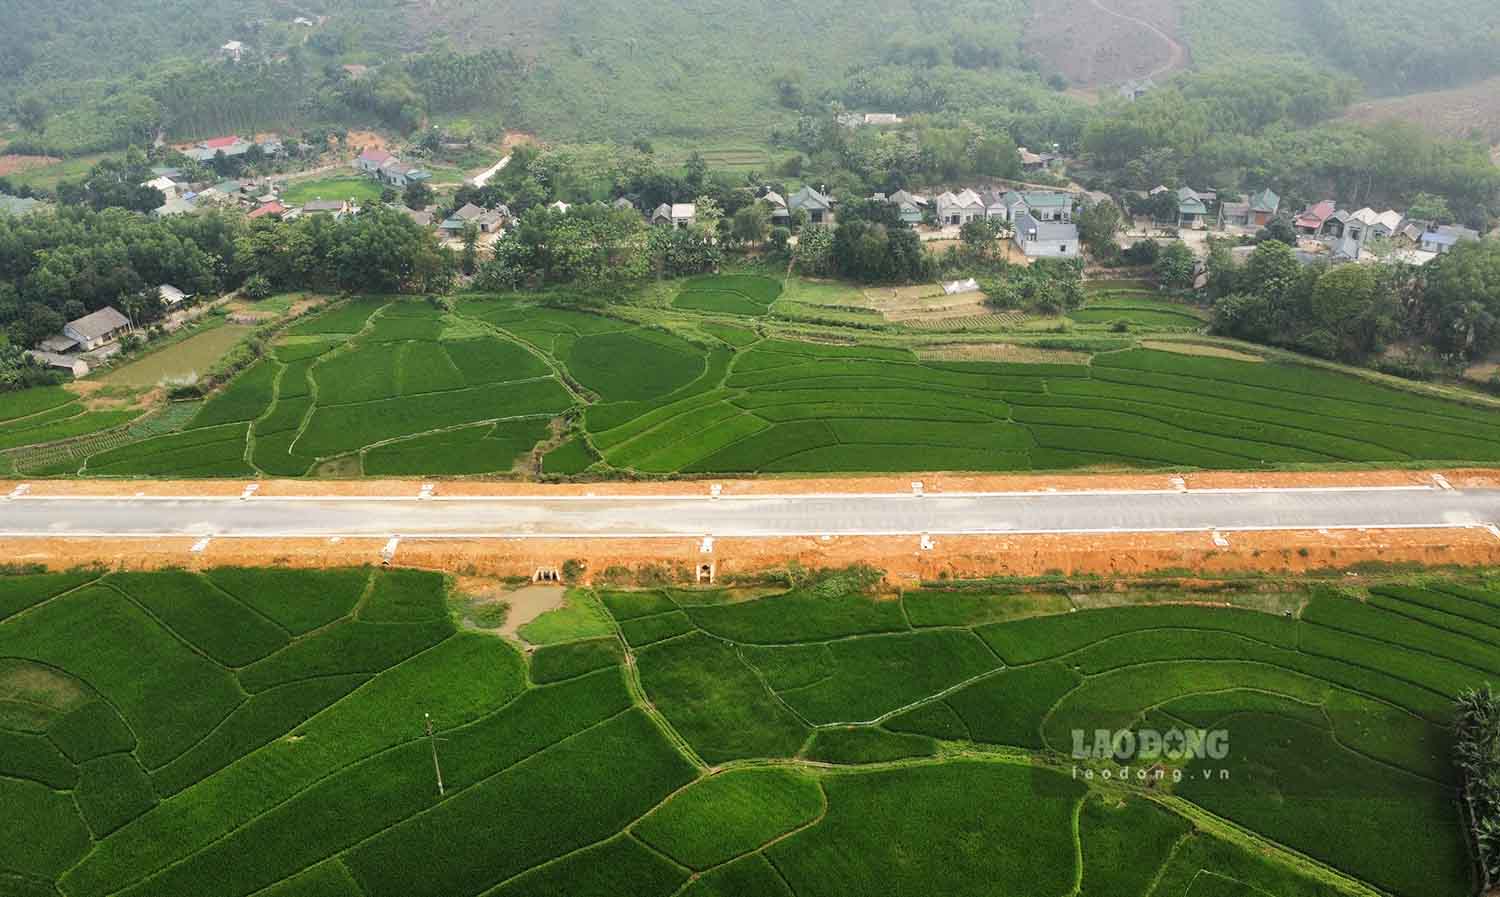 Phần lớn tuyến đường được mở mới, đi qua đồng ruộng, đồi núi và một số khu dân cư của các xã Nhữ Khê, xã Nhữ Han (huyện Yên Sơn) với 145 hộ dân có đất thu hồi, giải phóng mặt bằng. 